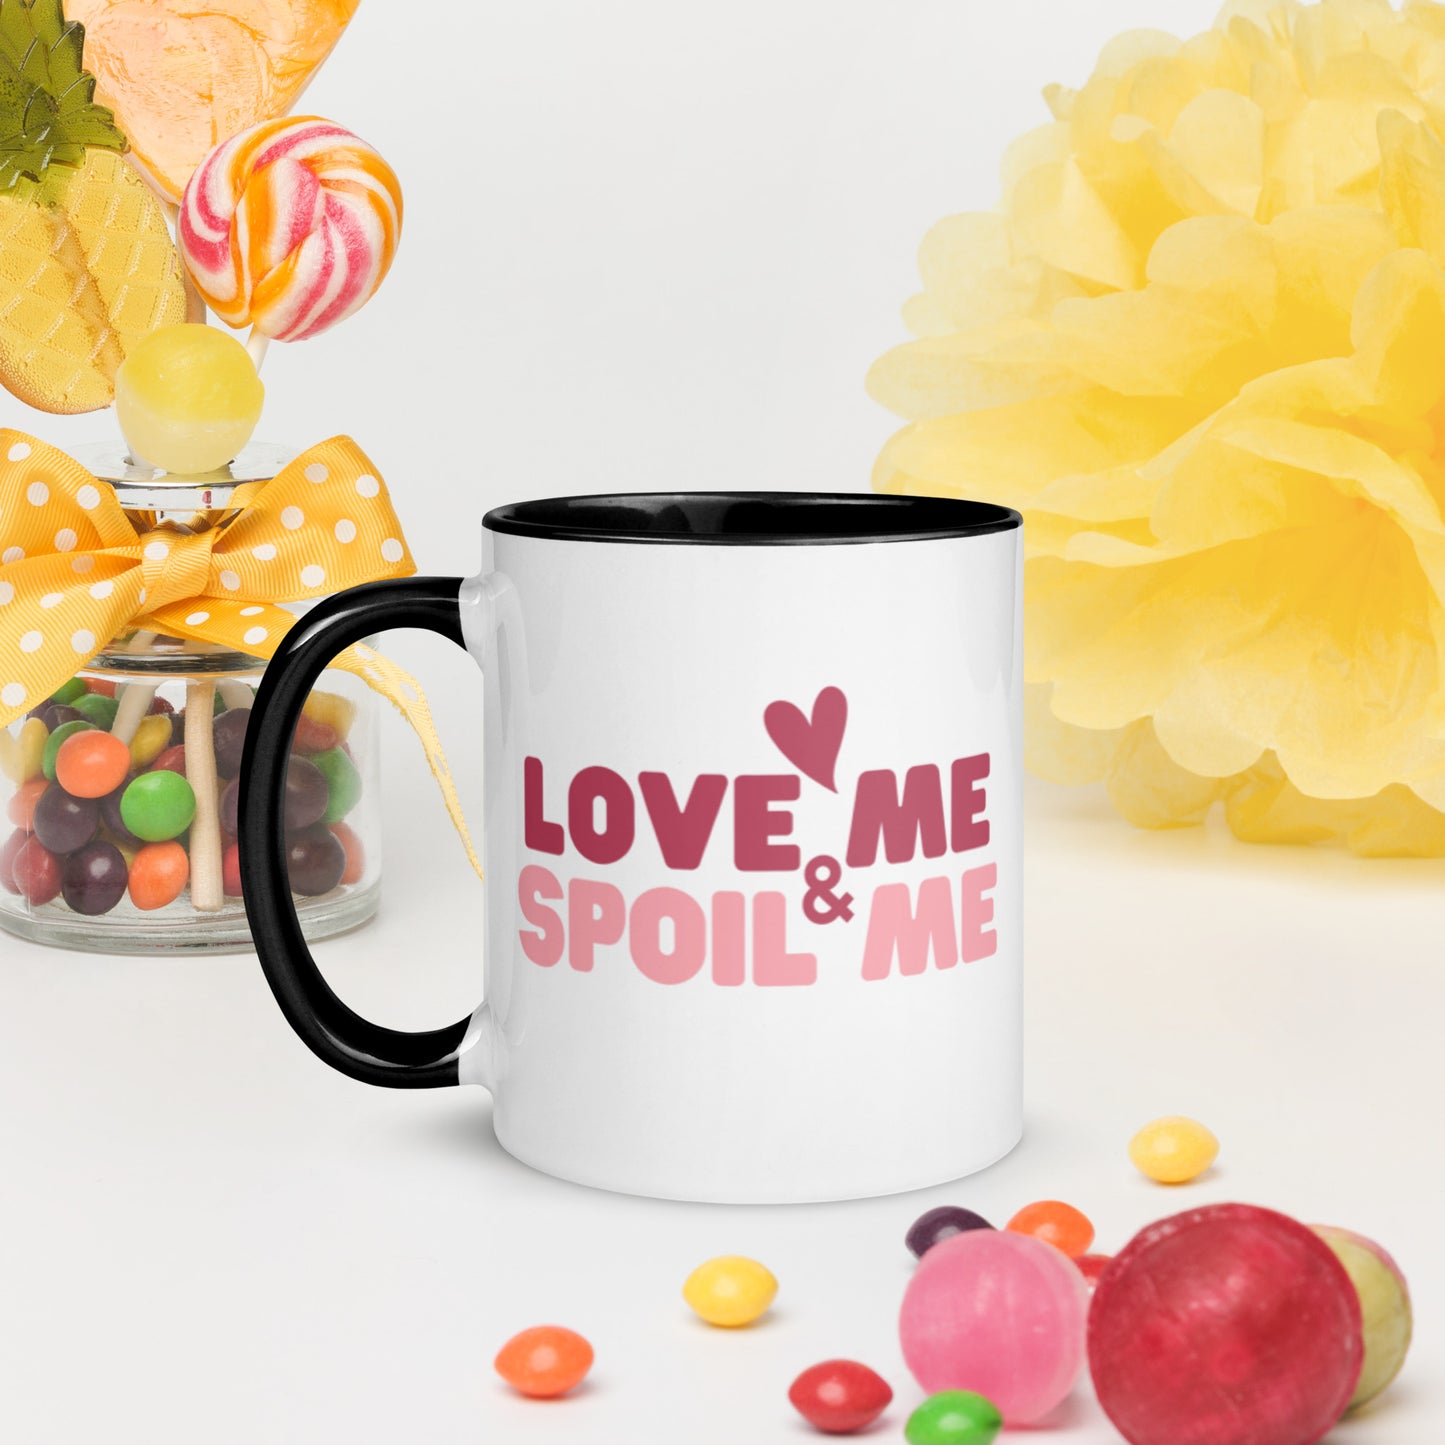 Love Me Mug